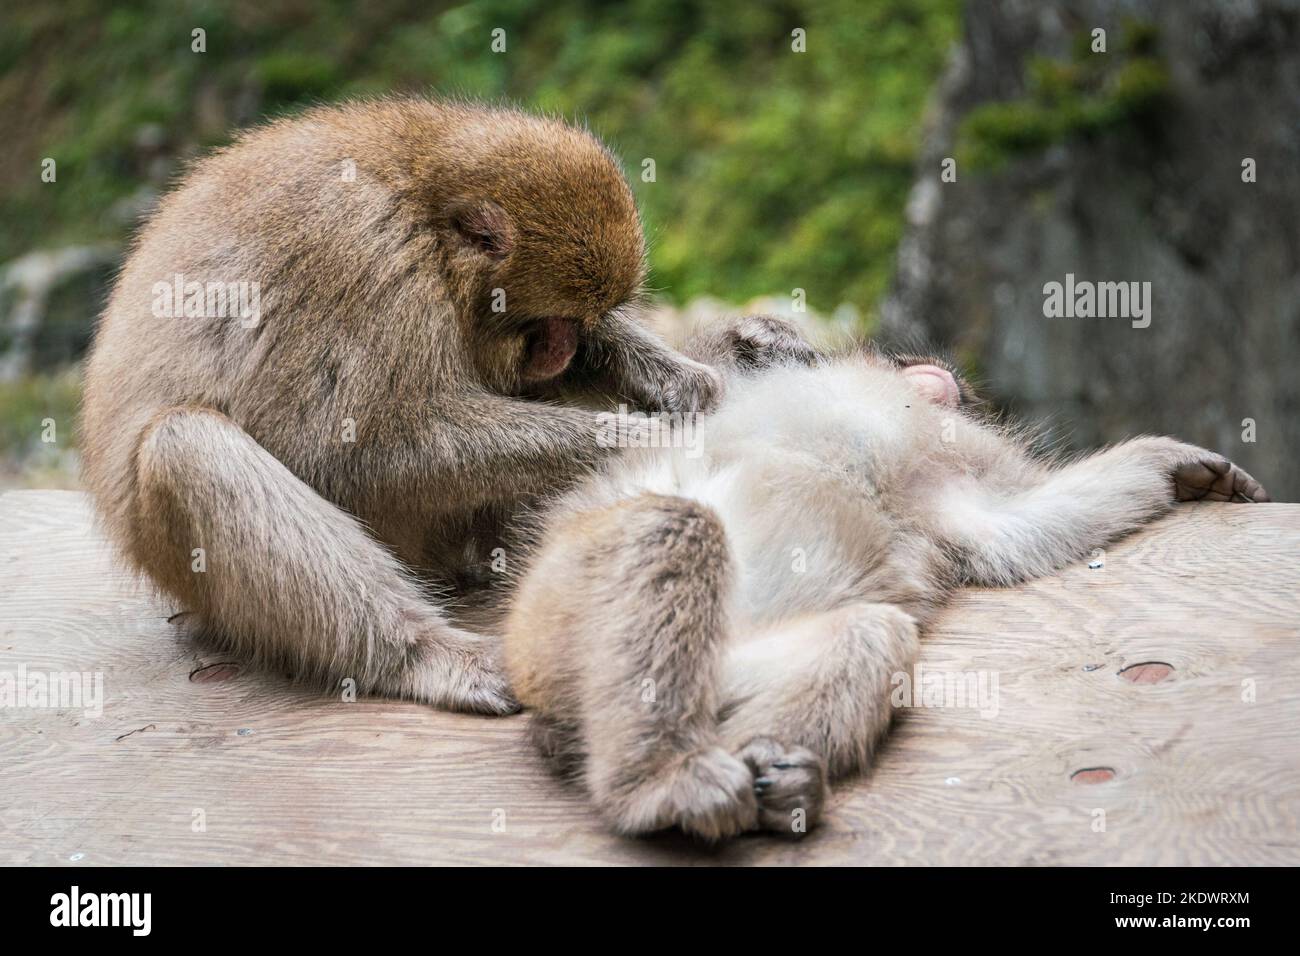 Japanese macaques grooming at the hot springs in Jigokudami Monkey Park, Nagano, Japan. Stock Photo